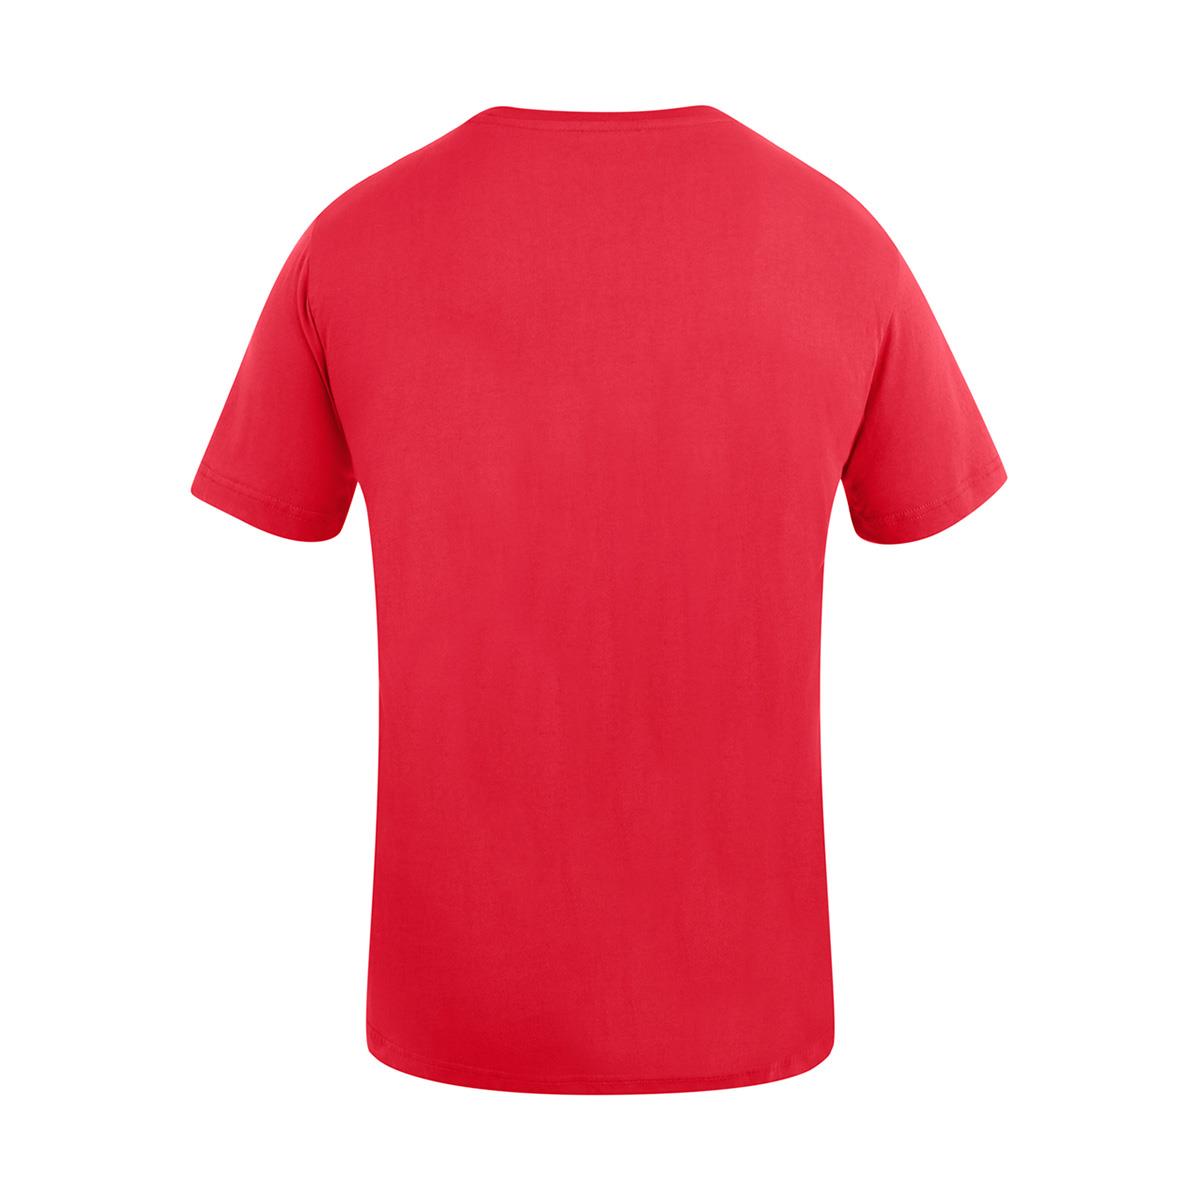 Unik Man Tee Shirtin Red Fashion Model